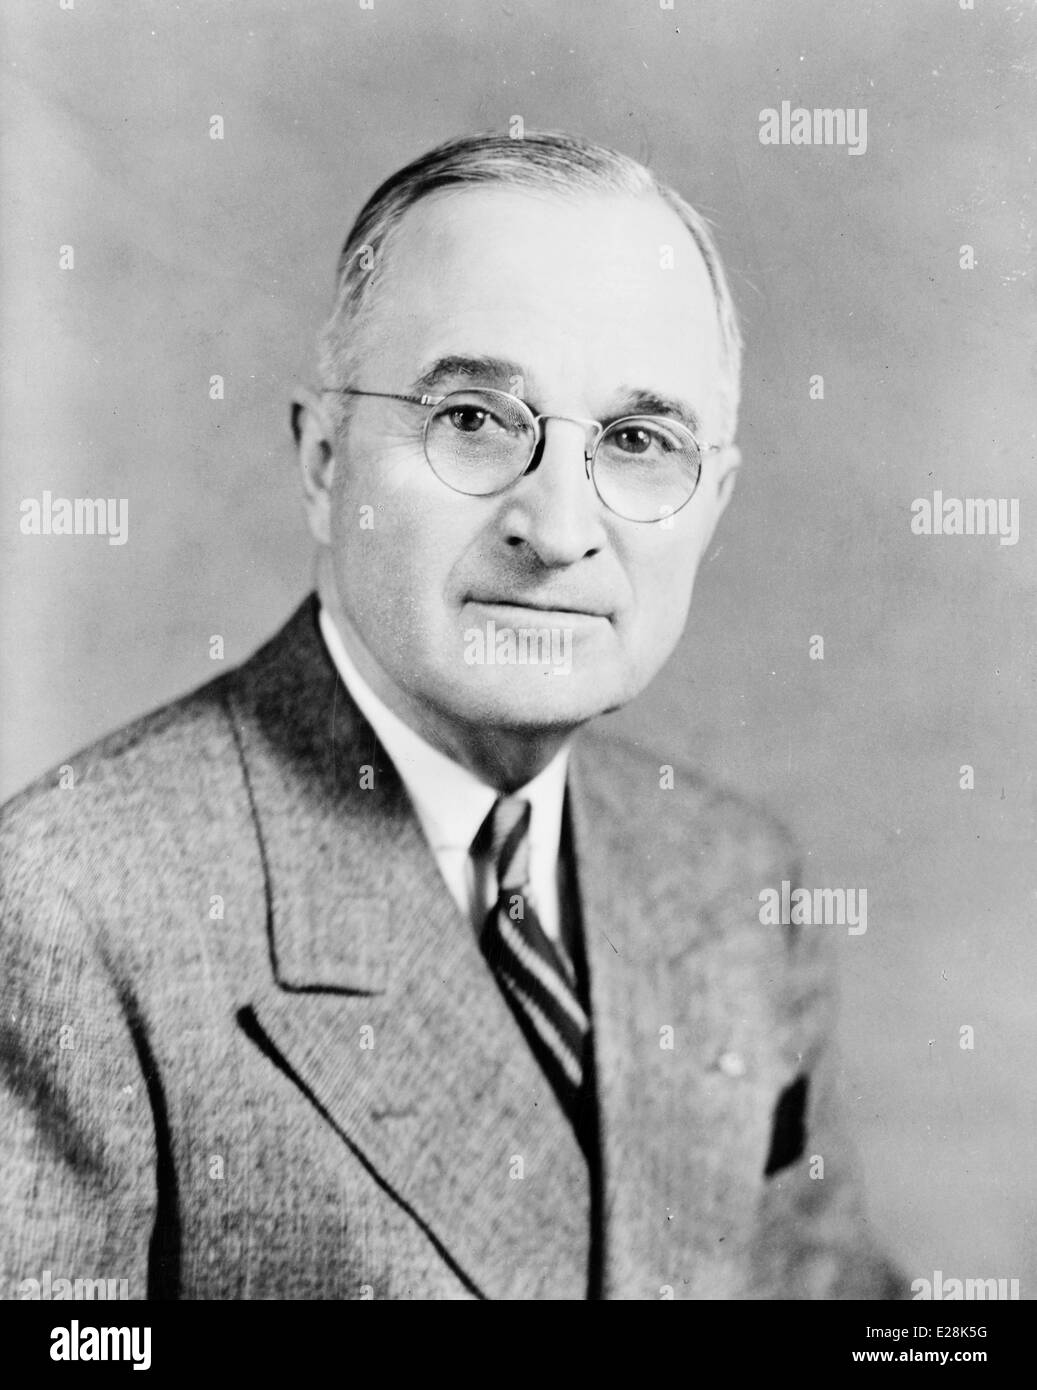 Harry S. Truman, 33e président des États-Unis d'Amérique Banque D'Images